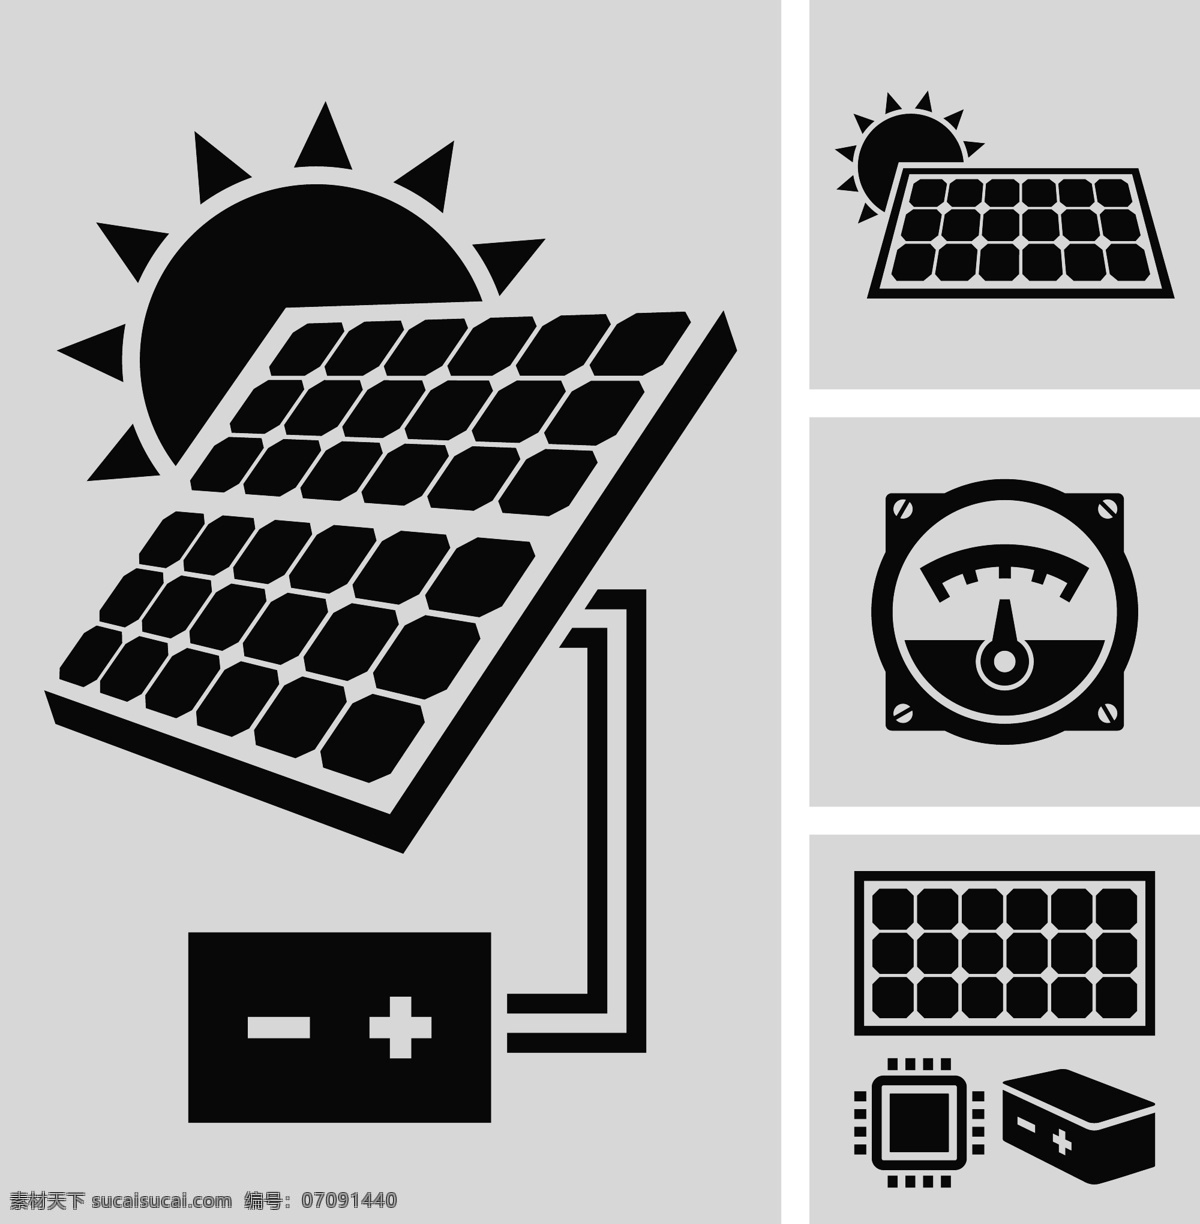 太阳能 发电 图标 电池板 环保 节能 阳光 标志图标 矢量素材 黑色